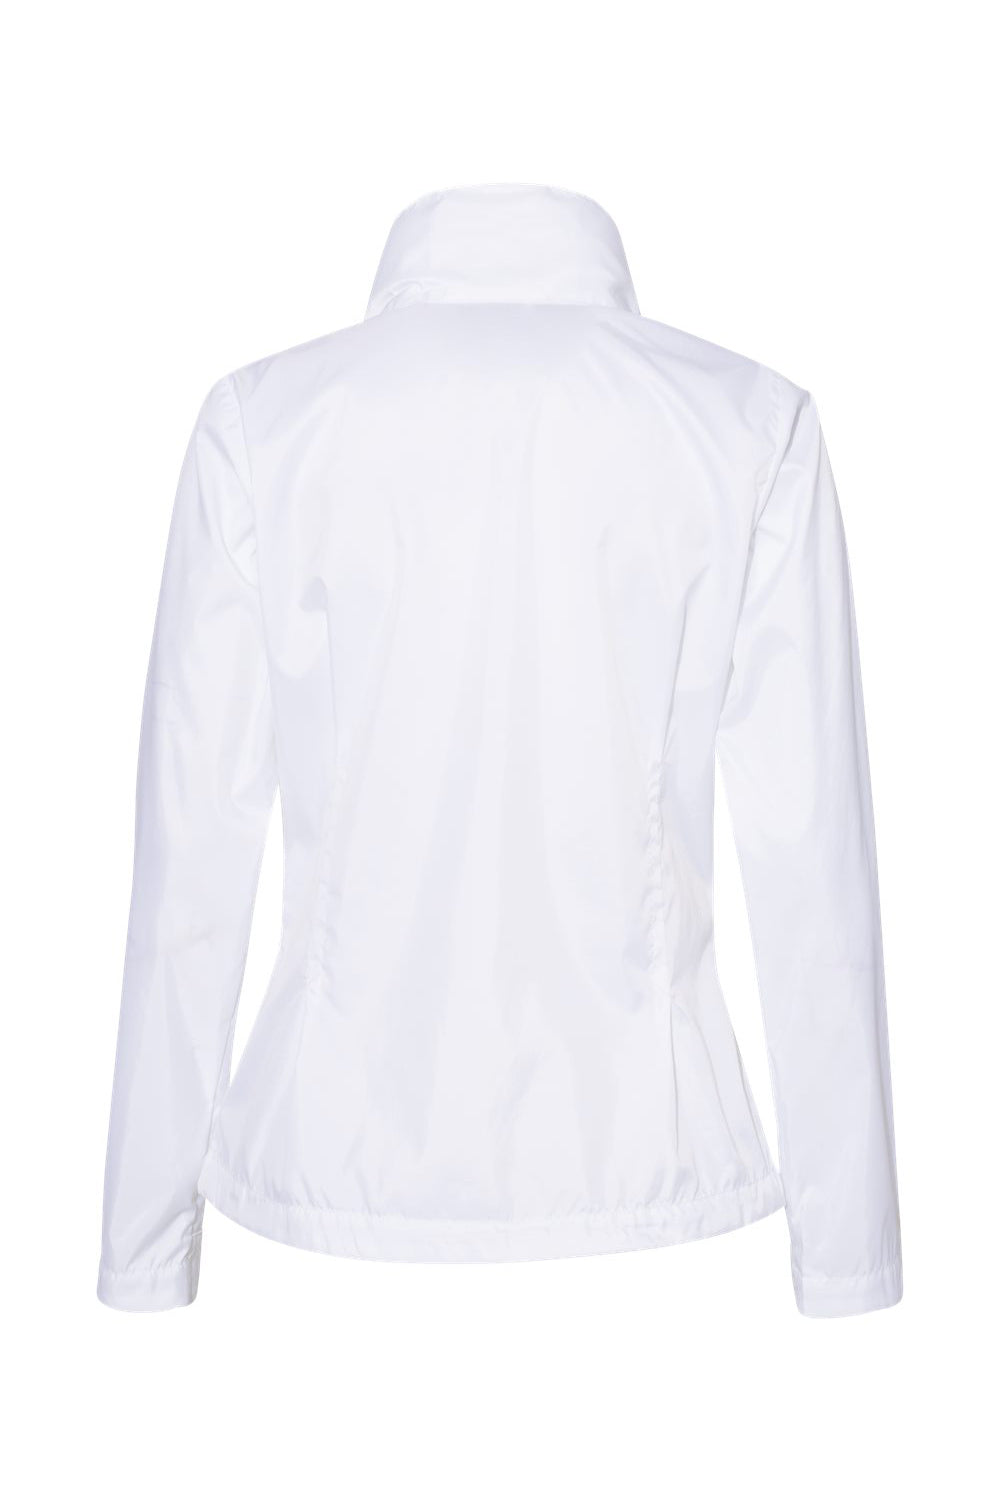 Columbia 177196 Womens Switchback III Full Zip Hooded Jacket White Flat Back